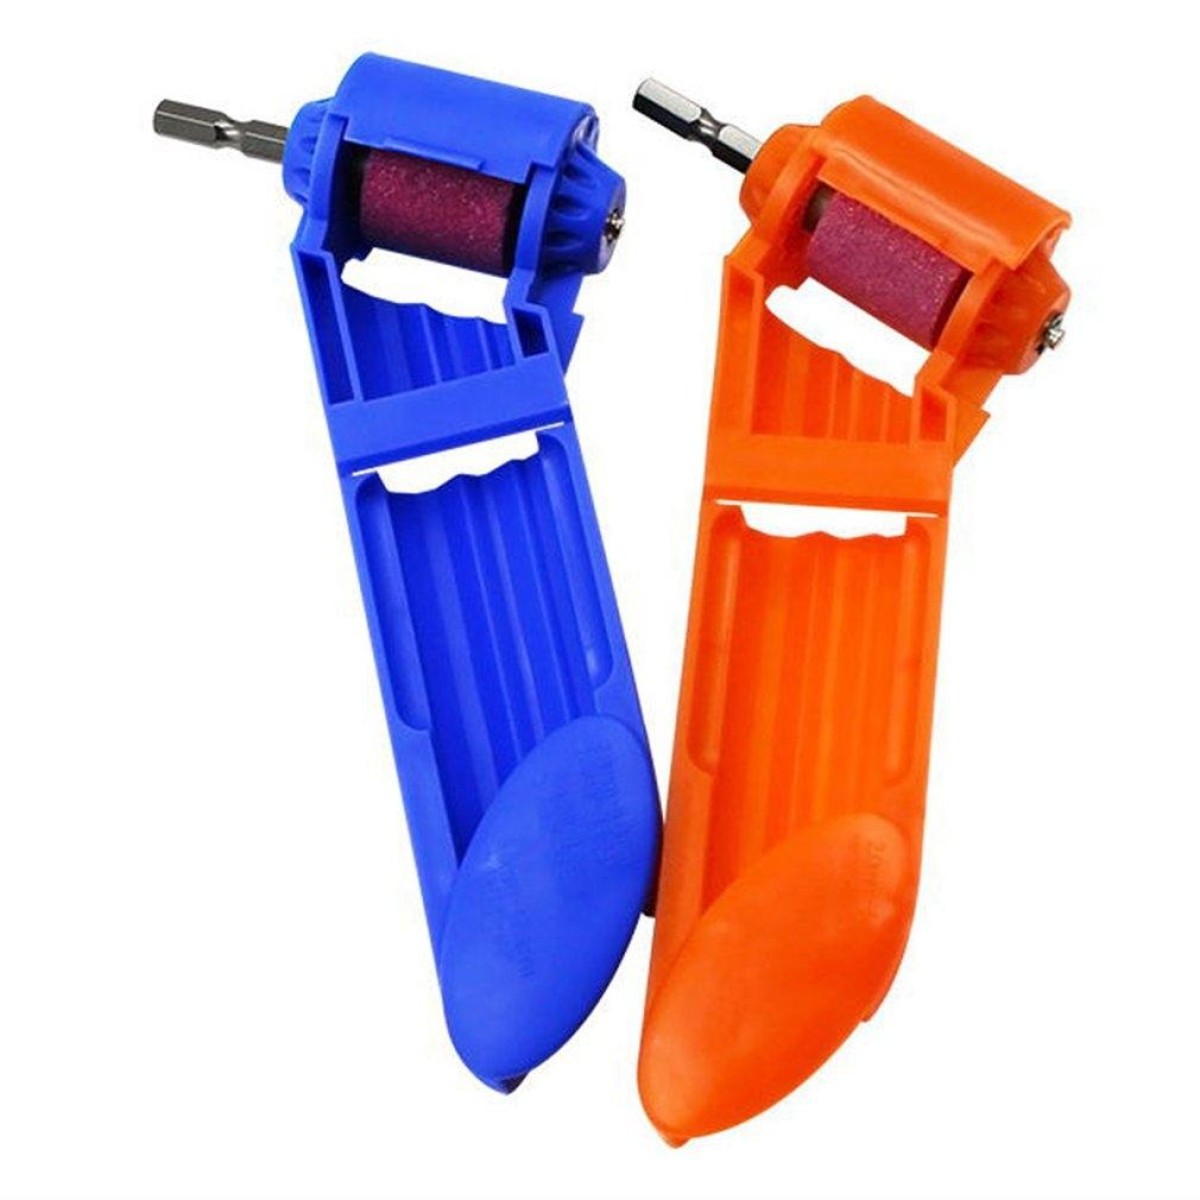 Portable Iron Straight Shank Twist Drill Bit Grinder(With Bucket  Orange)